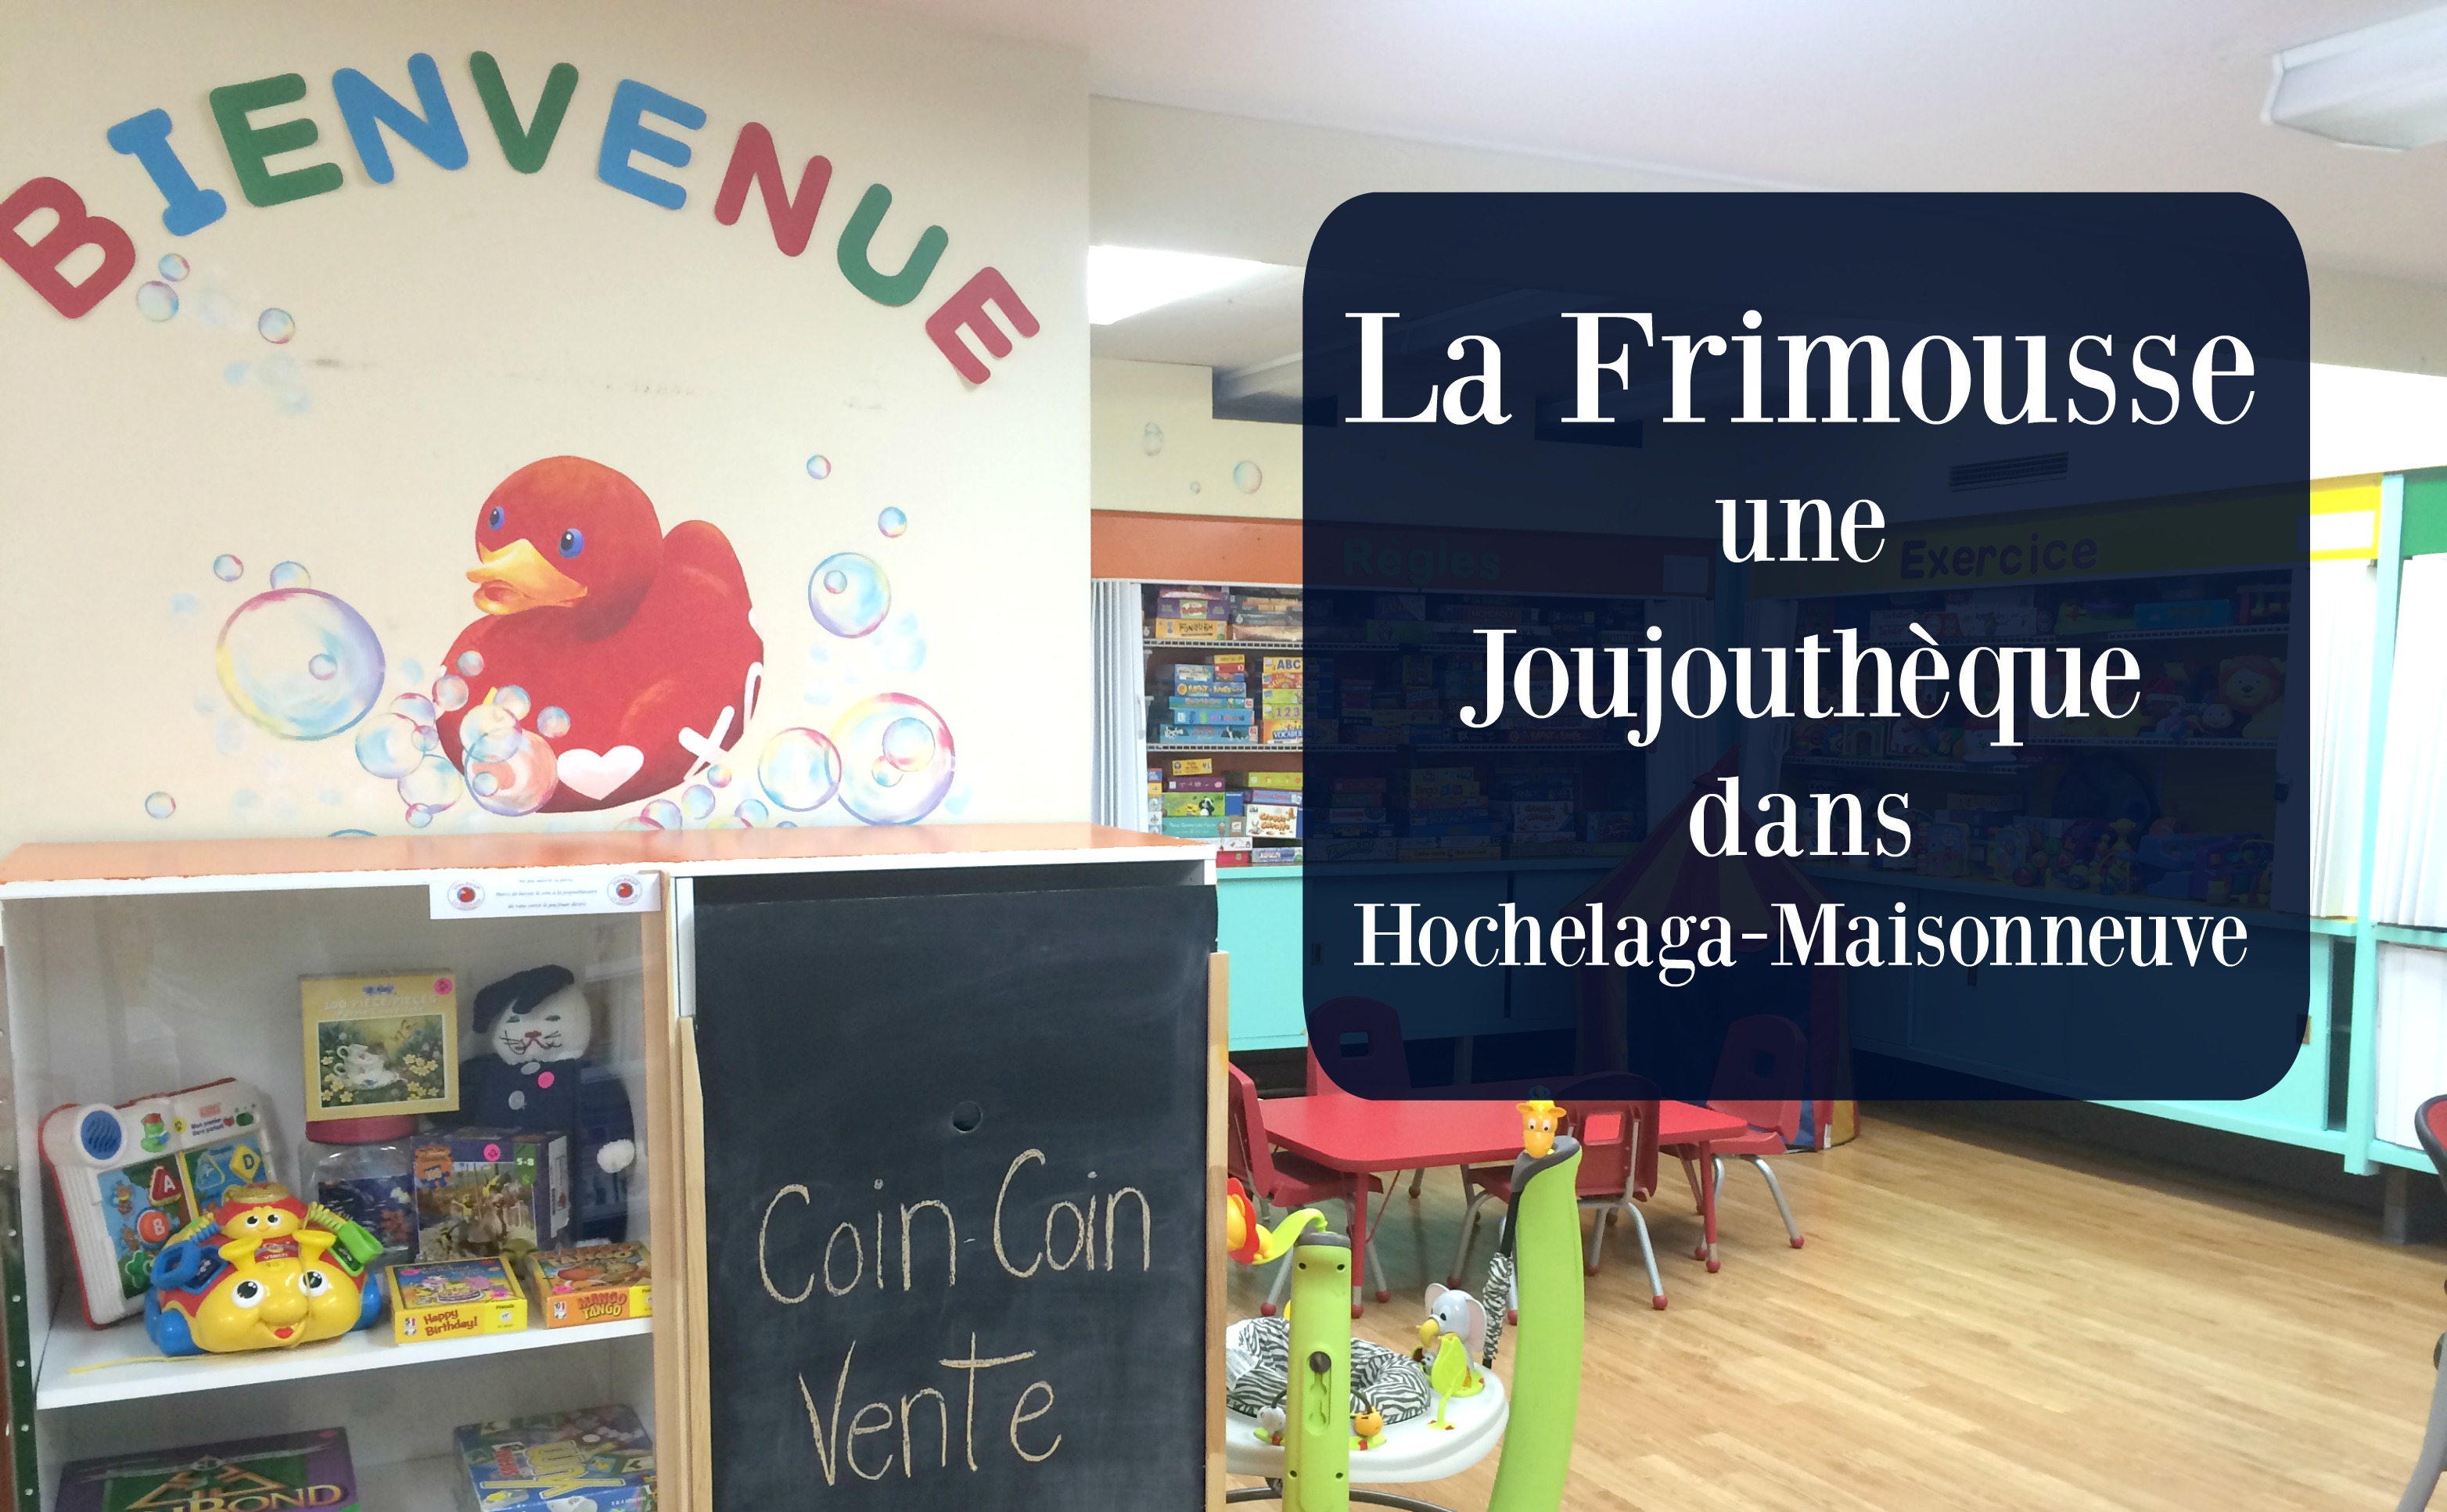 La Frimousse, Joujouthèque d’Hochelaga-Maisonneuve